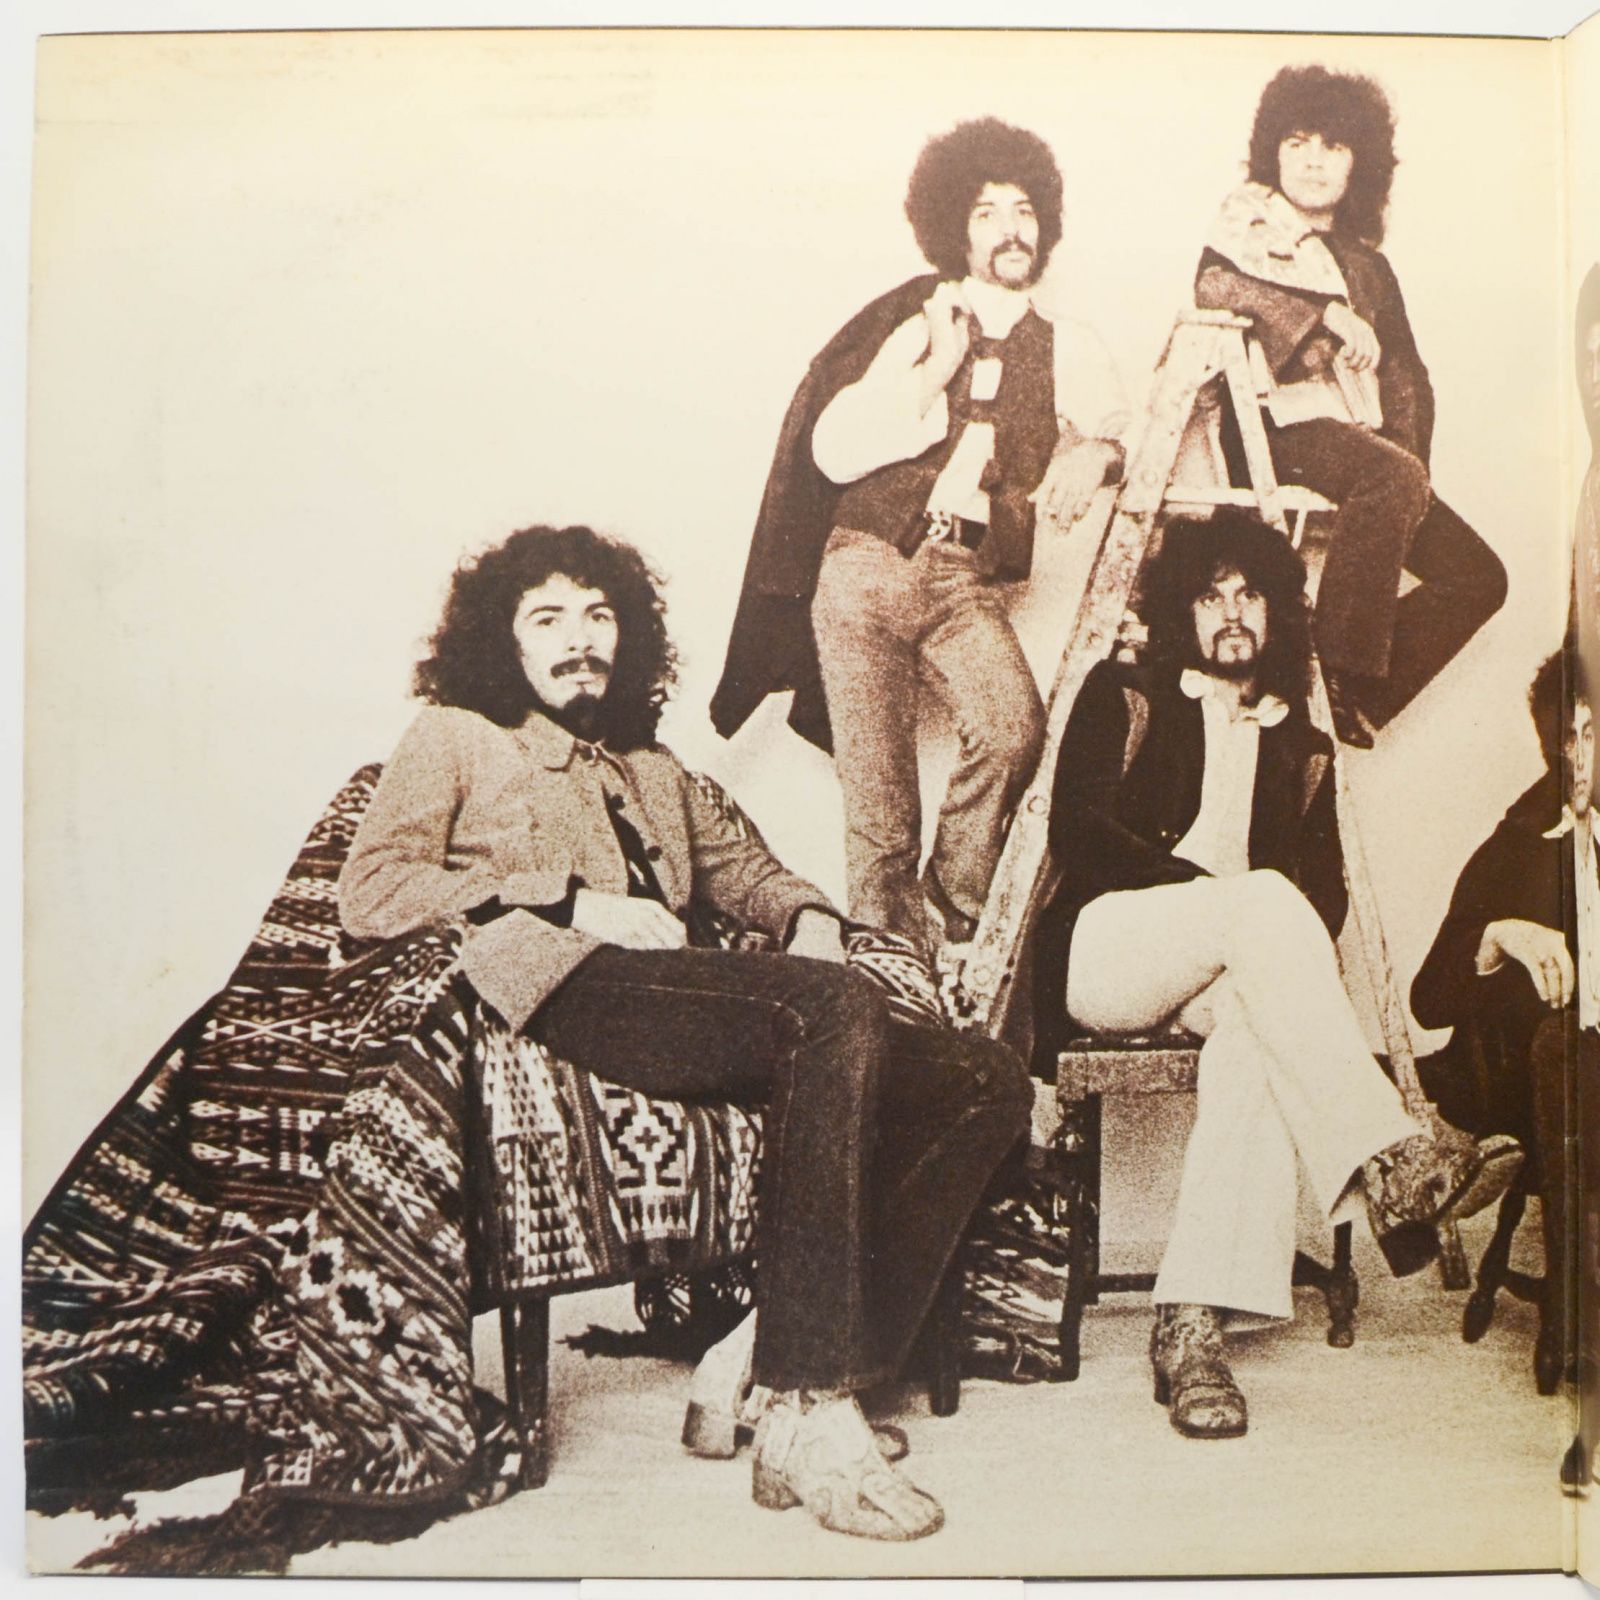 Santana — Santana (The Third Album), 1971